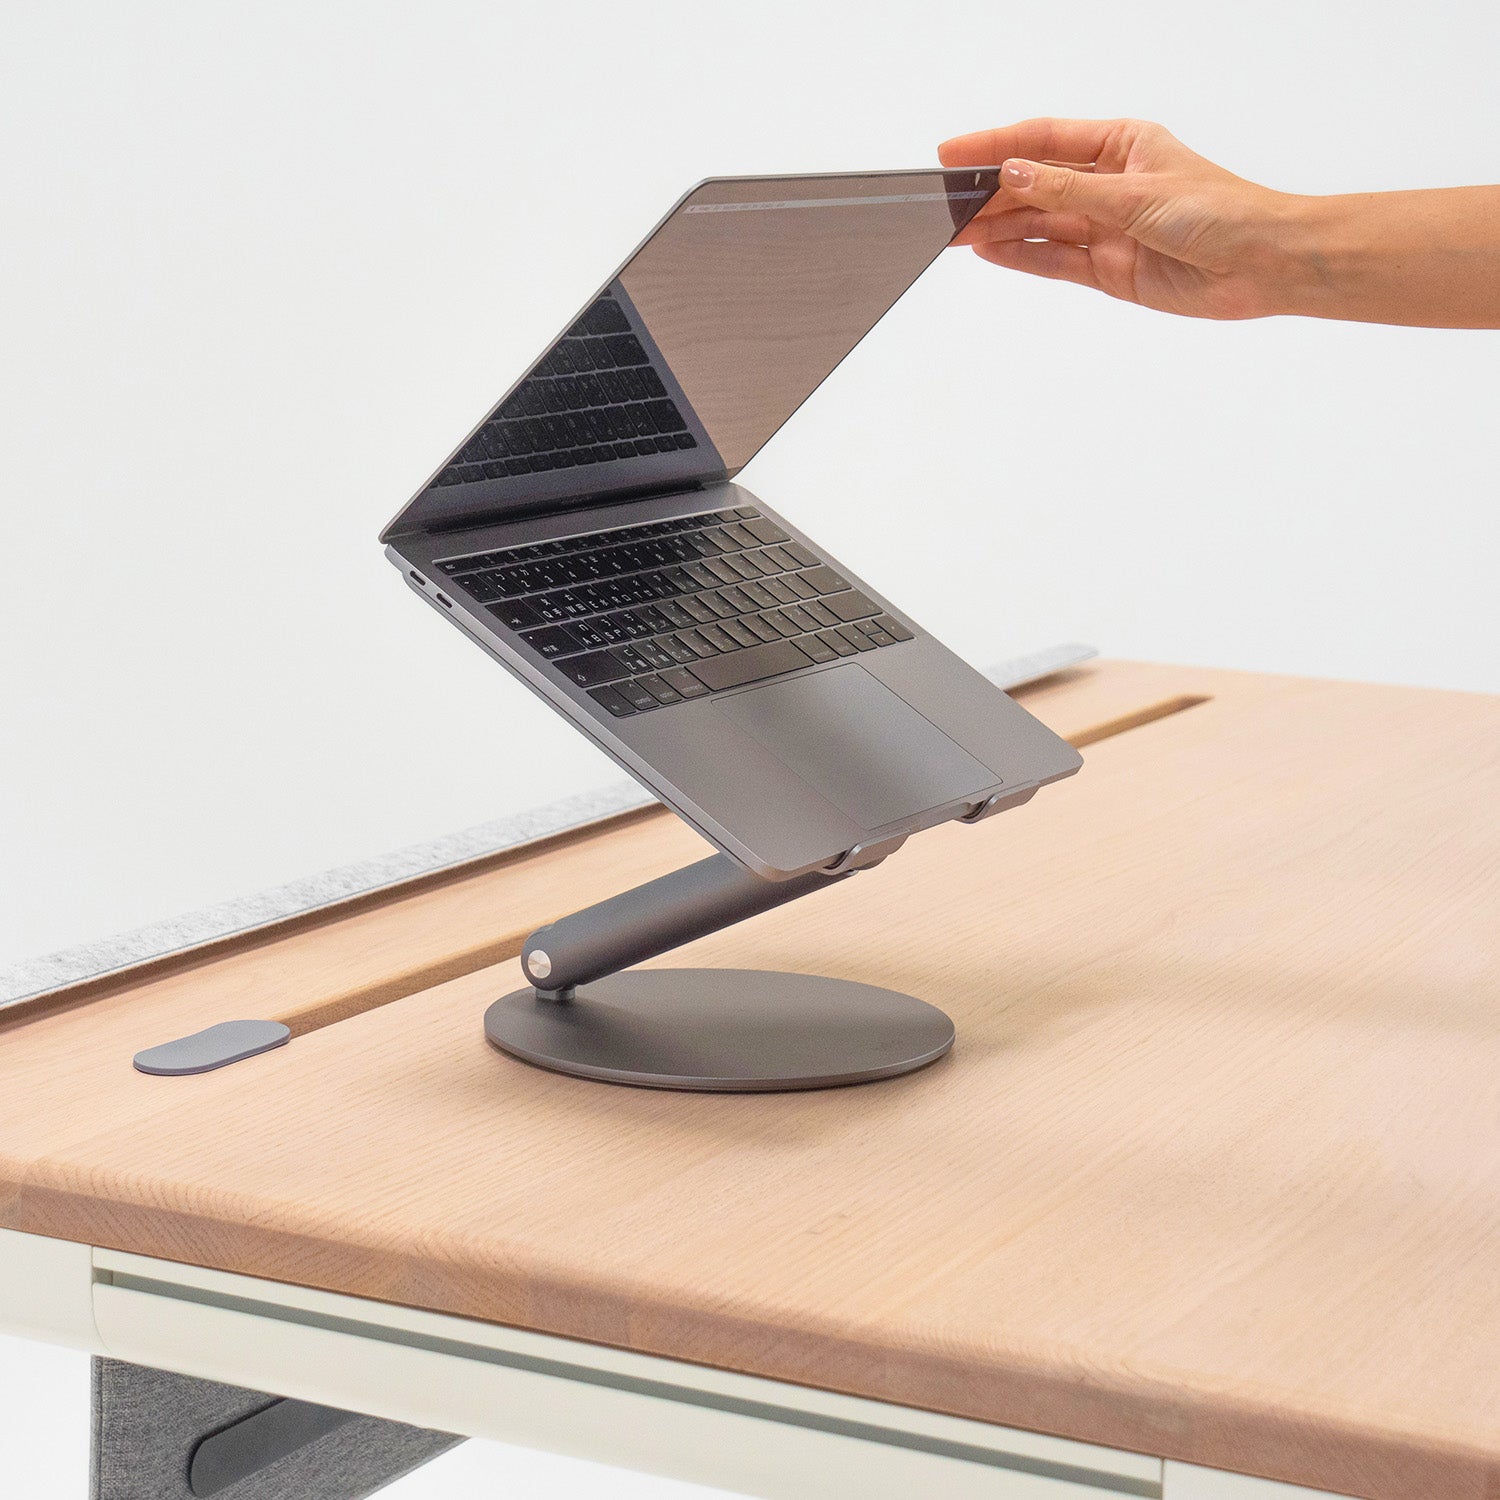 Slant - Angled Laptop Stand for Desk (Foldable)